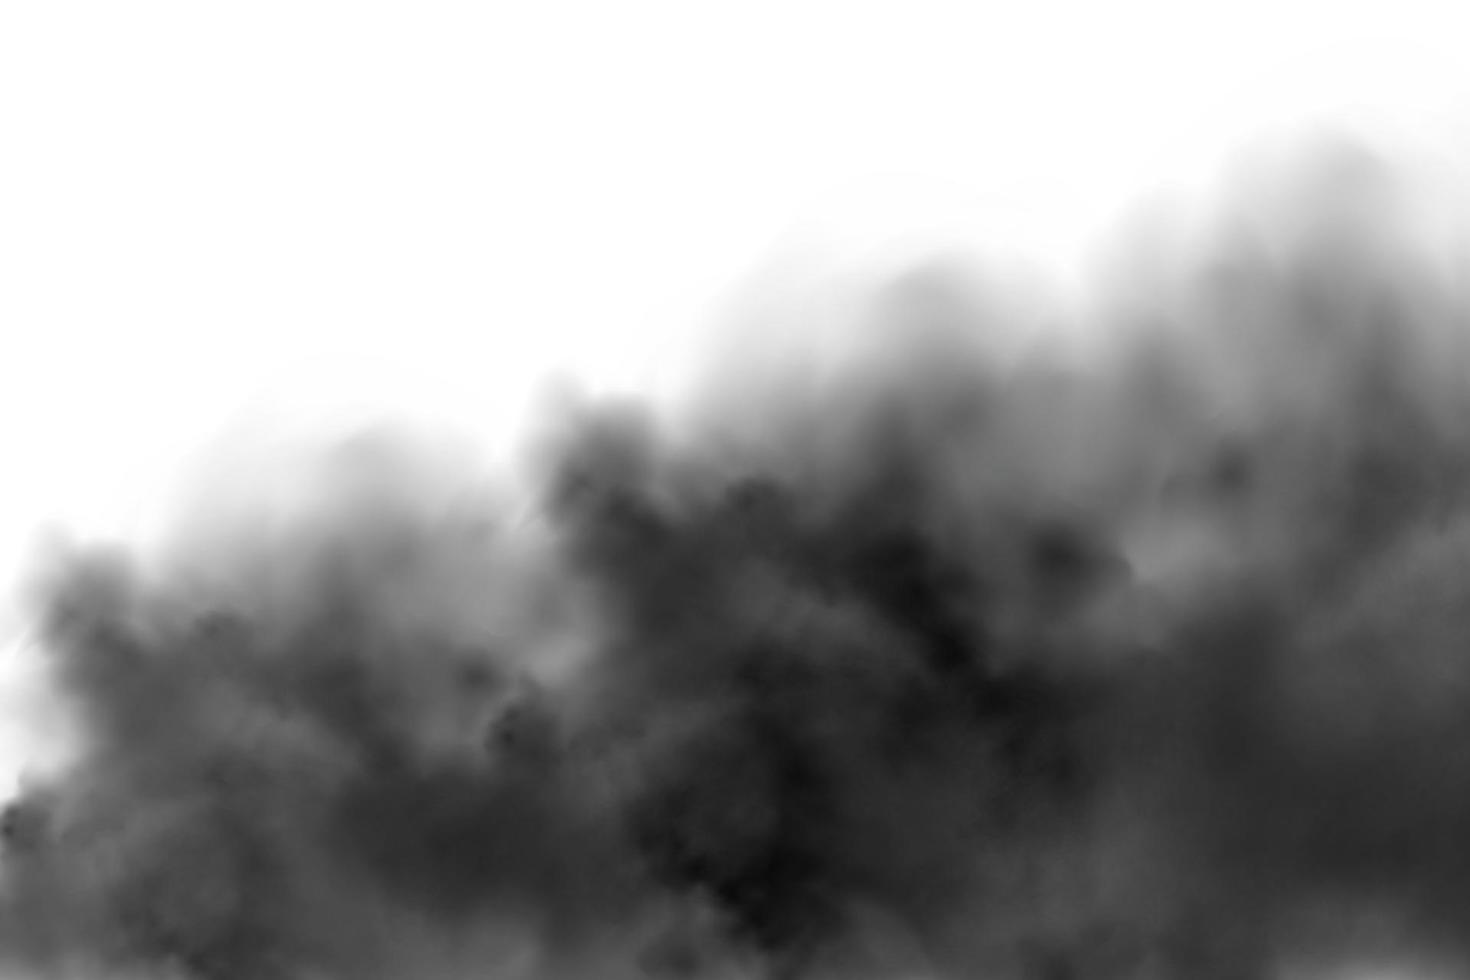 nube de polvo con partículas de suciedad, humo de cigarrillo, smog, tierra y arena. vector realista aislado sobre fondo transparente.